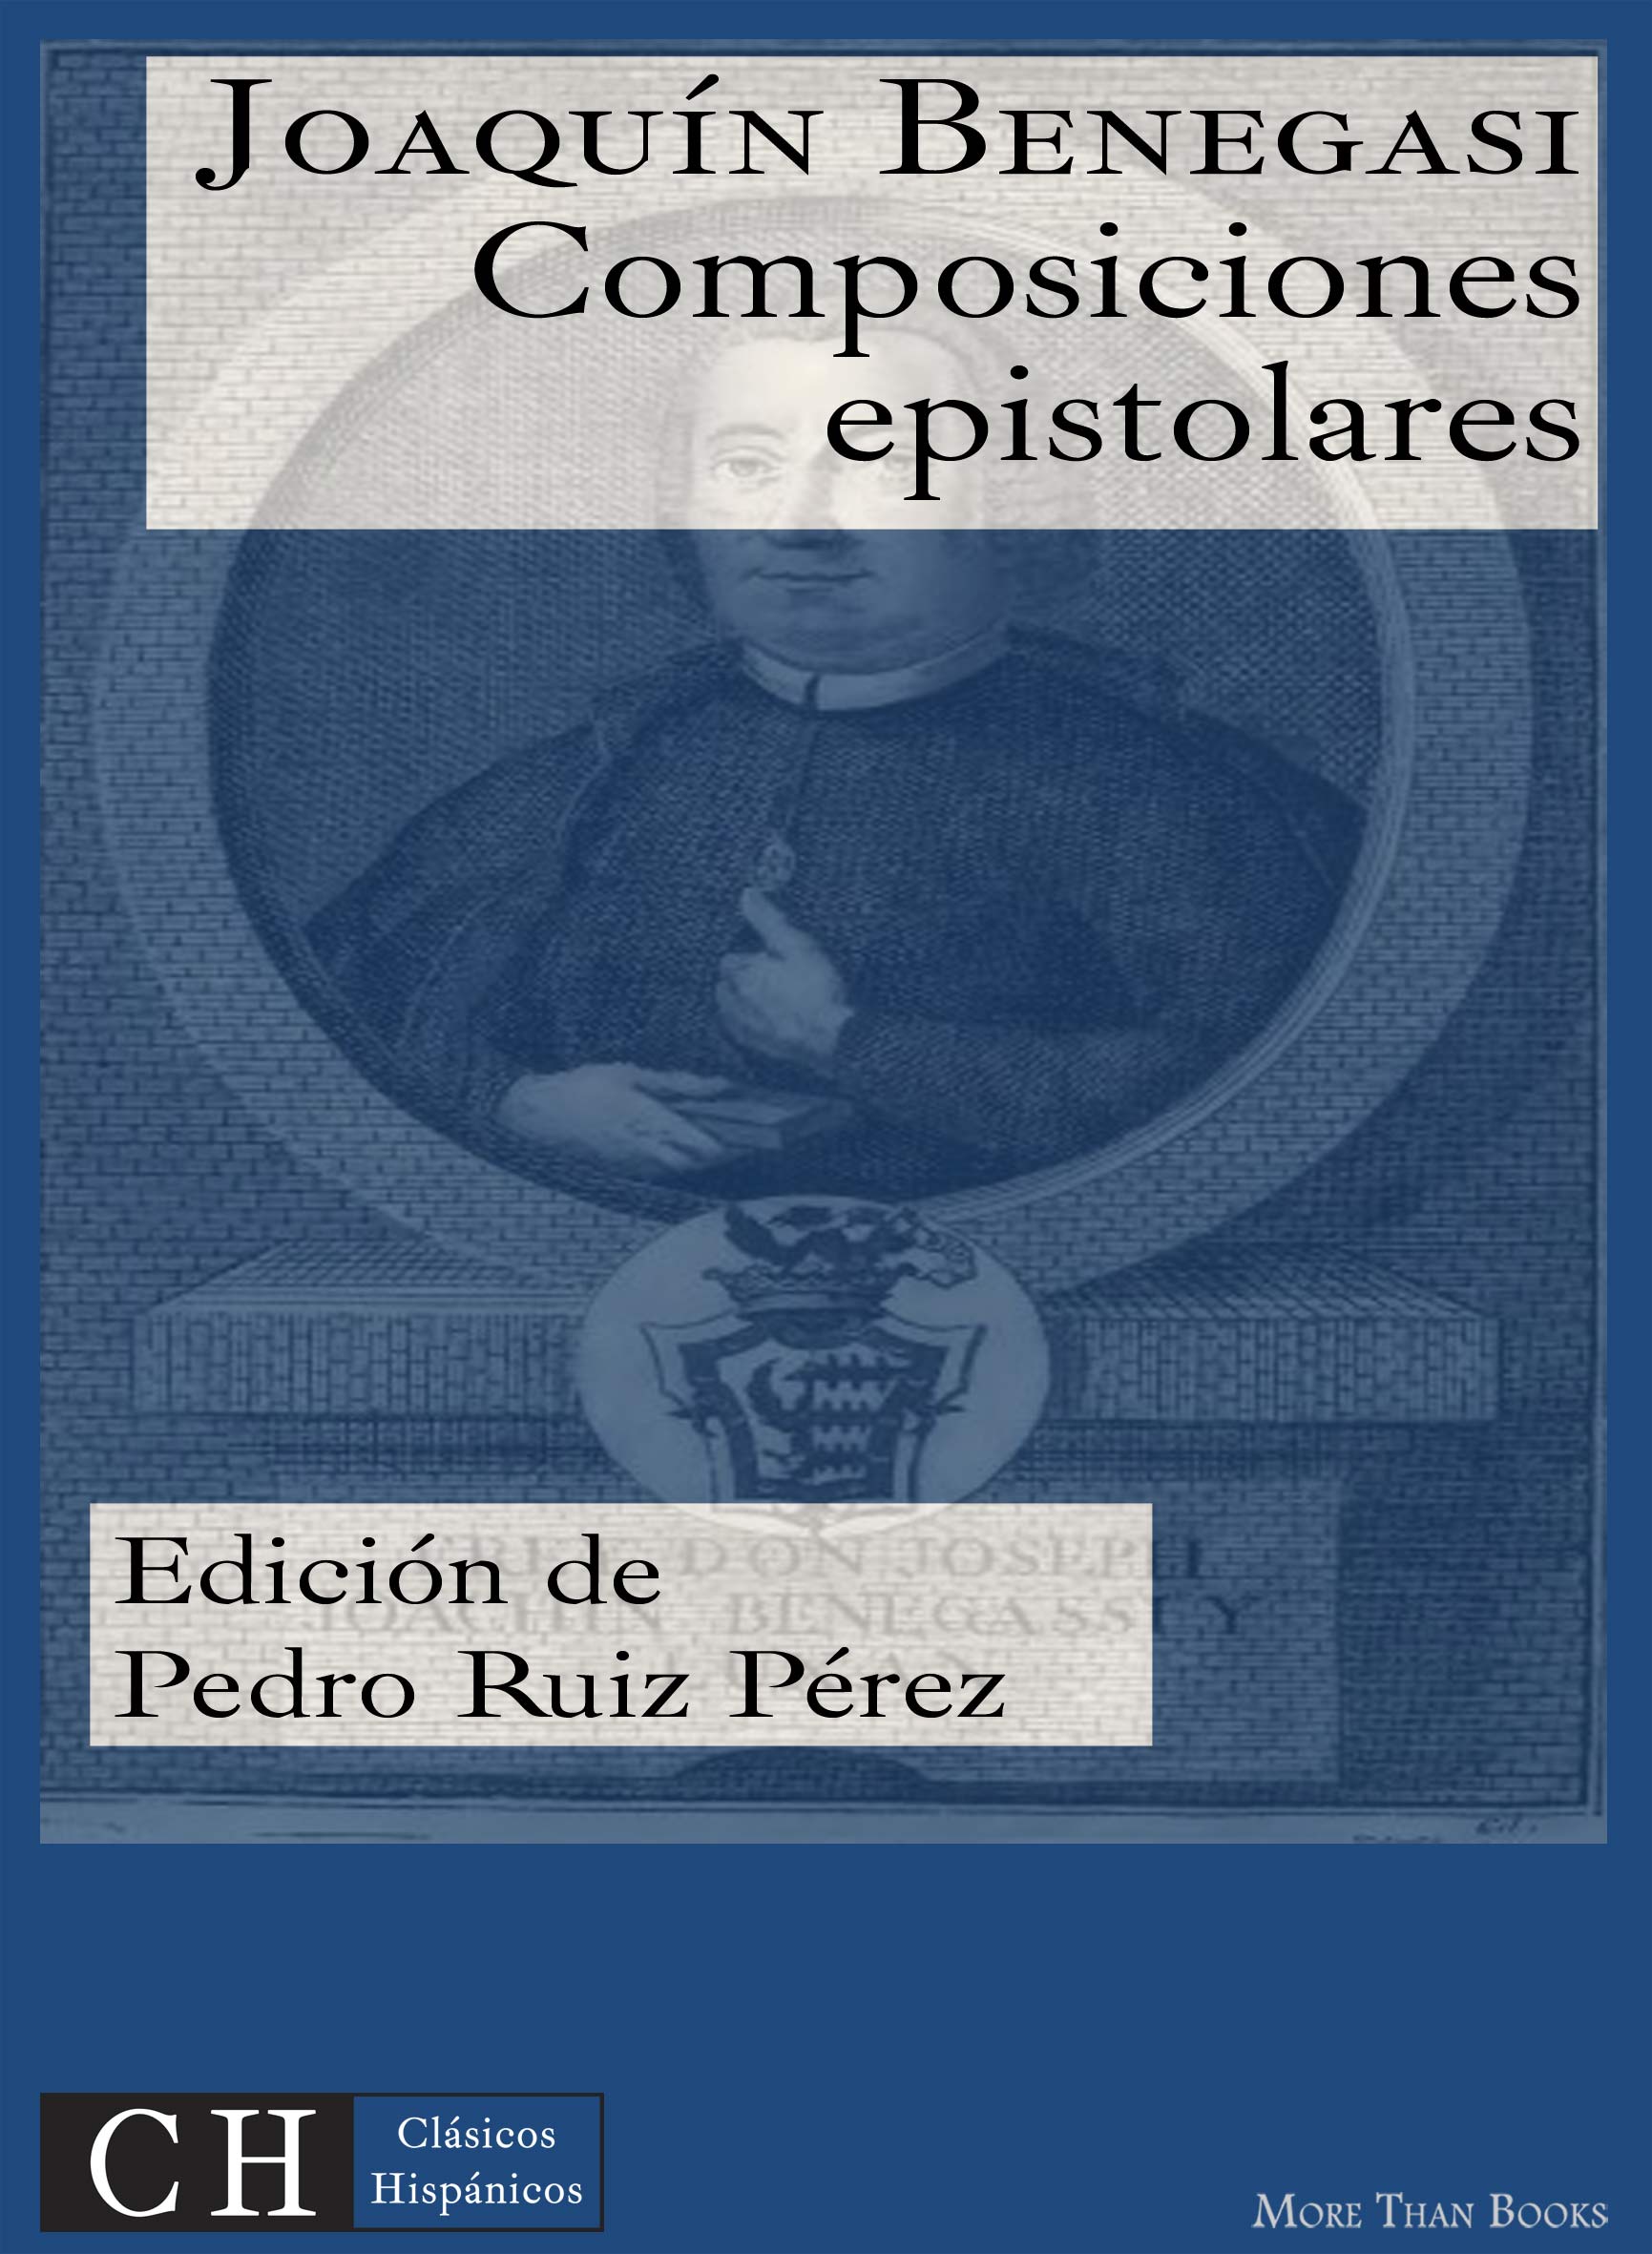 Imagen de portada del libro Composiciones epistolares